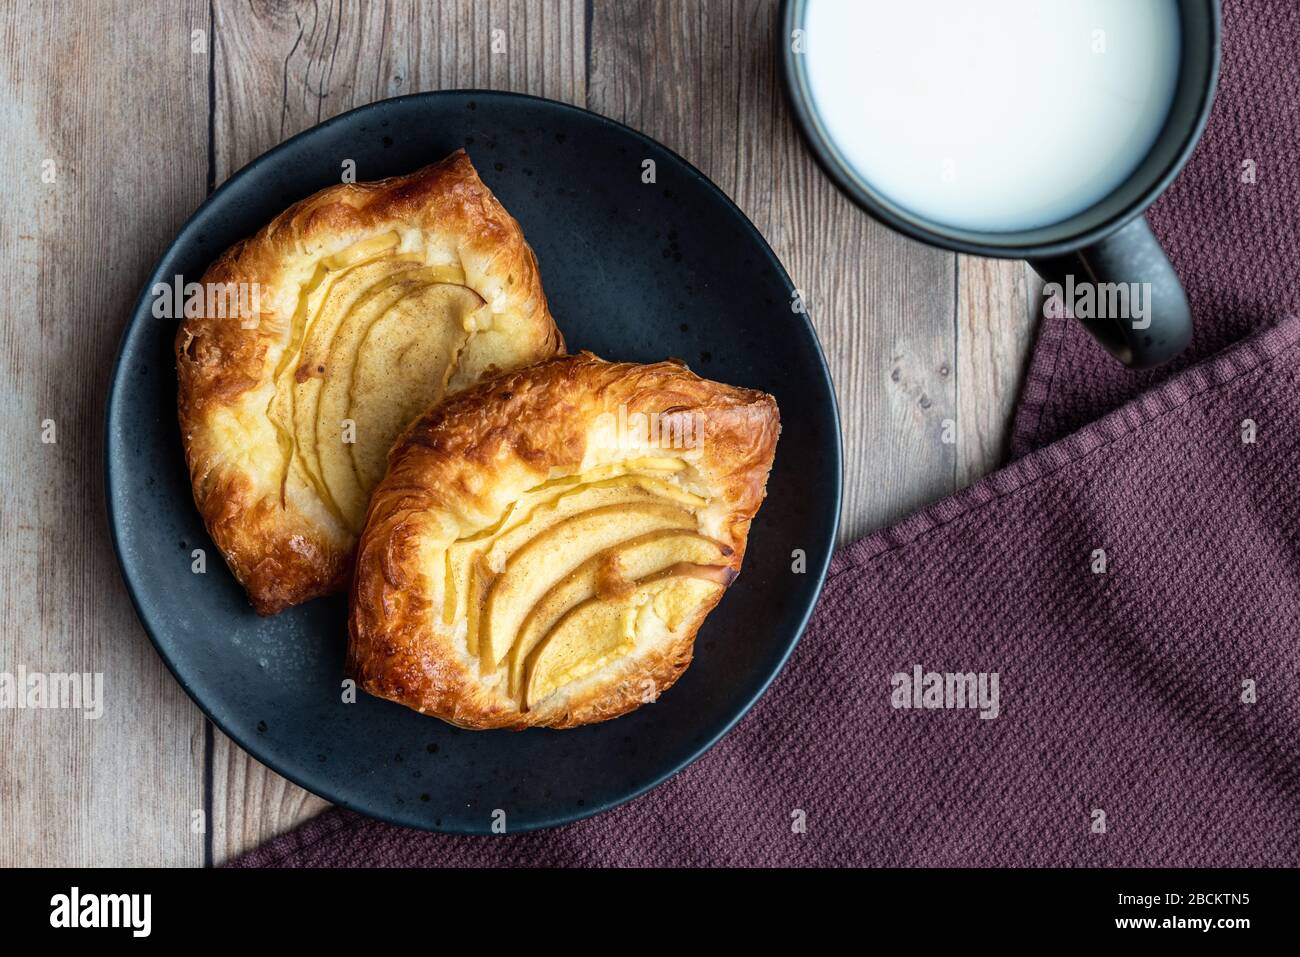 Crostate di mele singole fresche su un piatto nero, tazza di latte, tovagliolo di stoffa viola, sfondo di legno Foto Stock